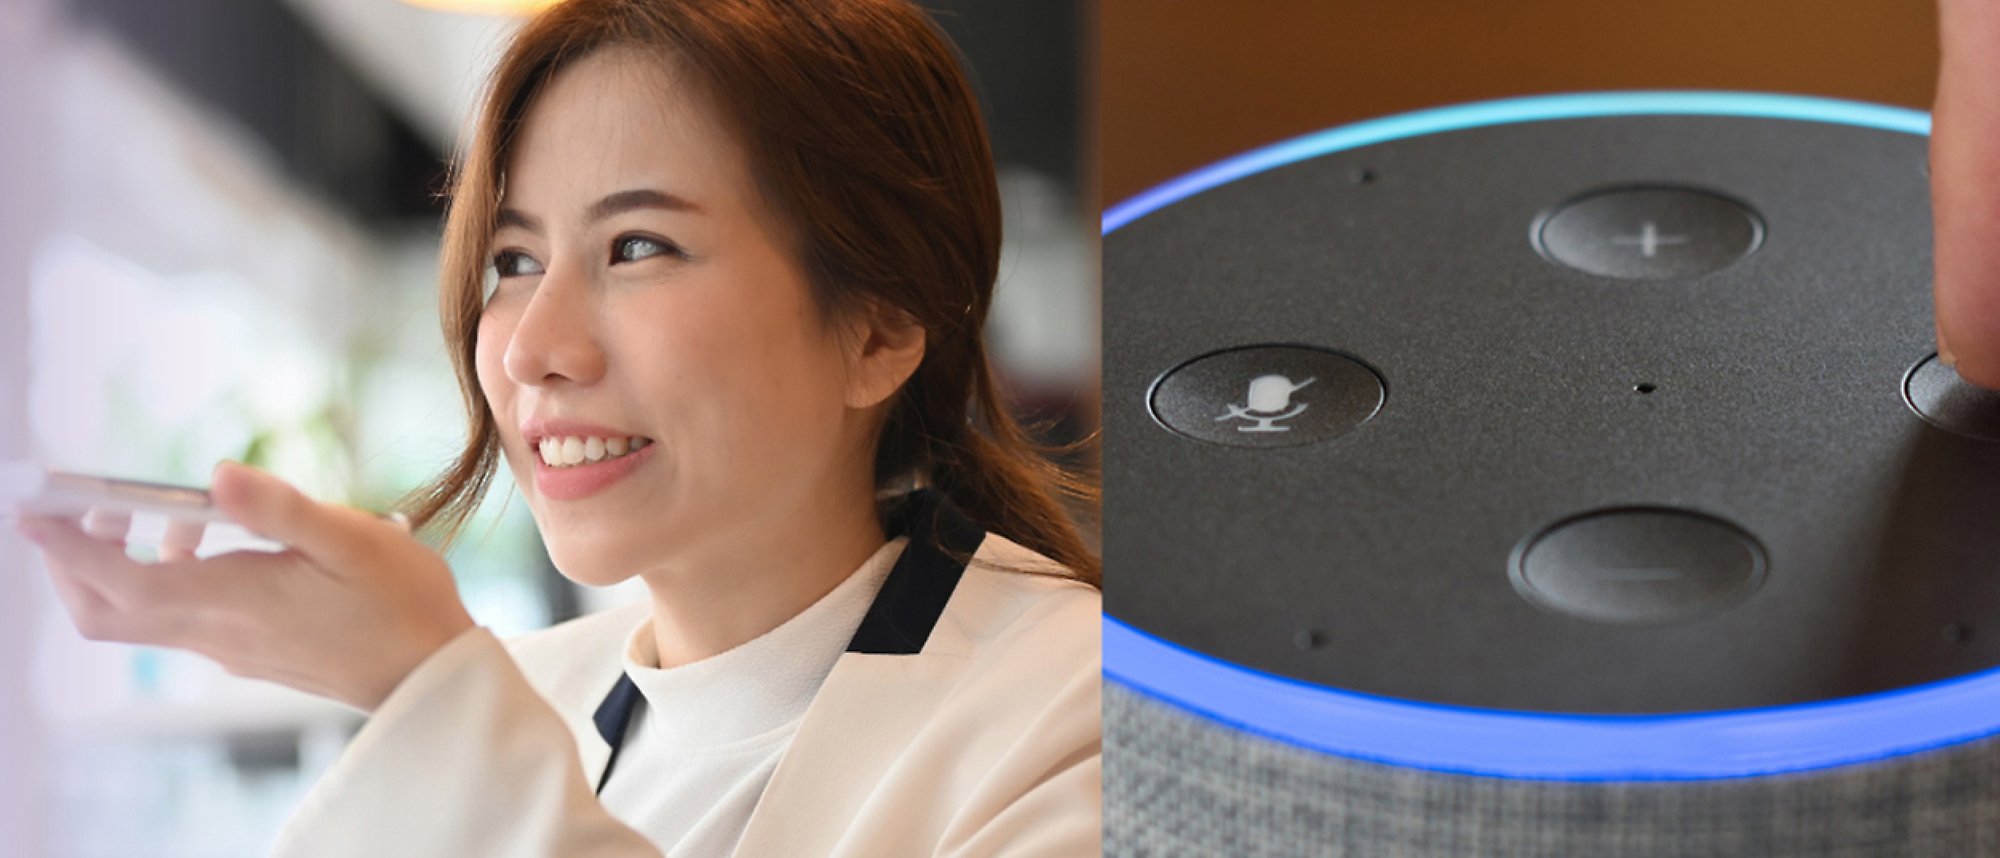 Изображение женщины, разговаривающей по телефону, и Amazon Alexa с синими световыми индикаторами и элементами управления звуком